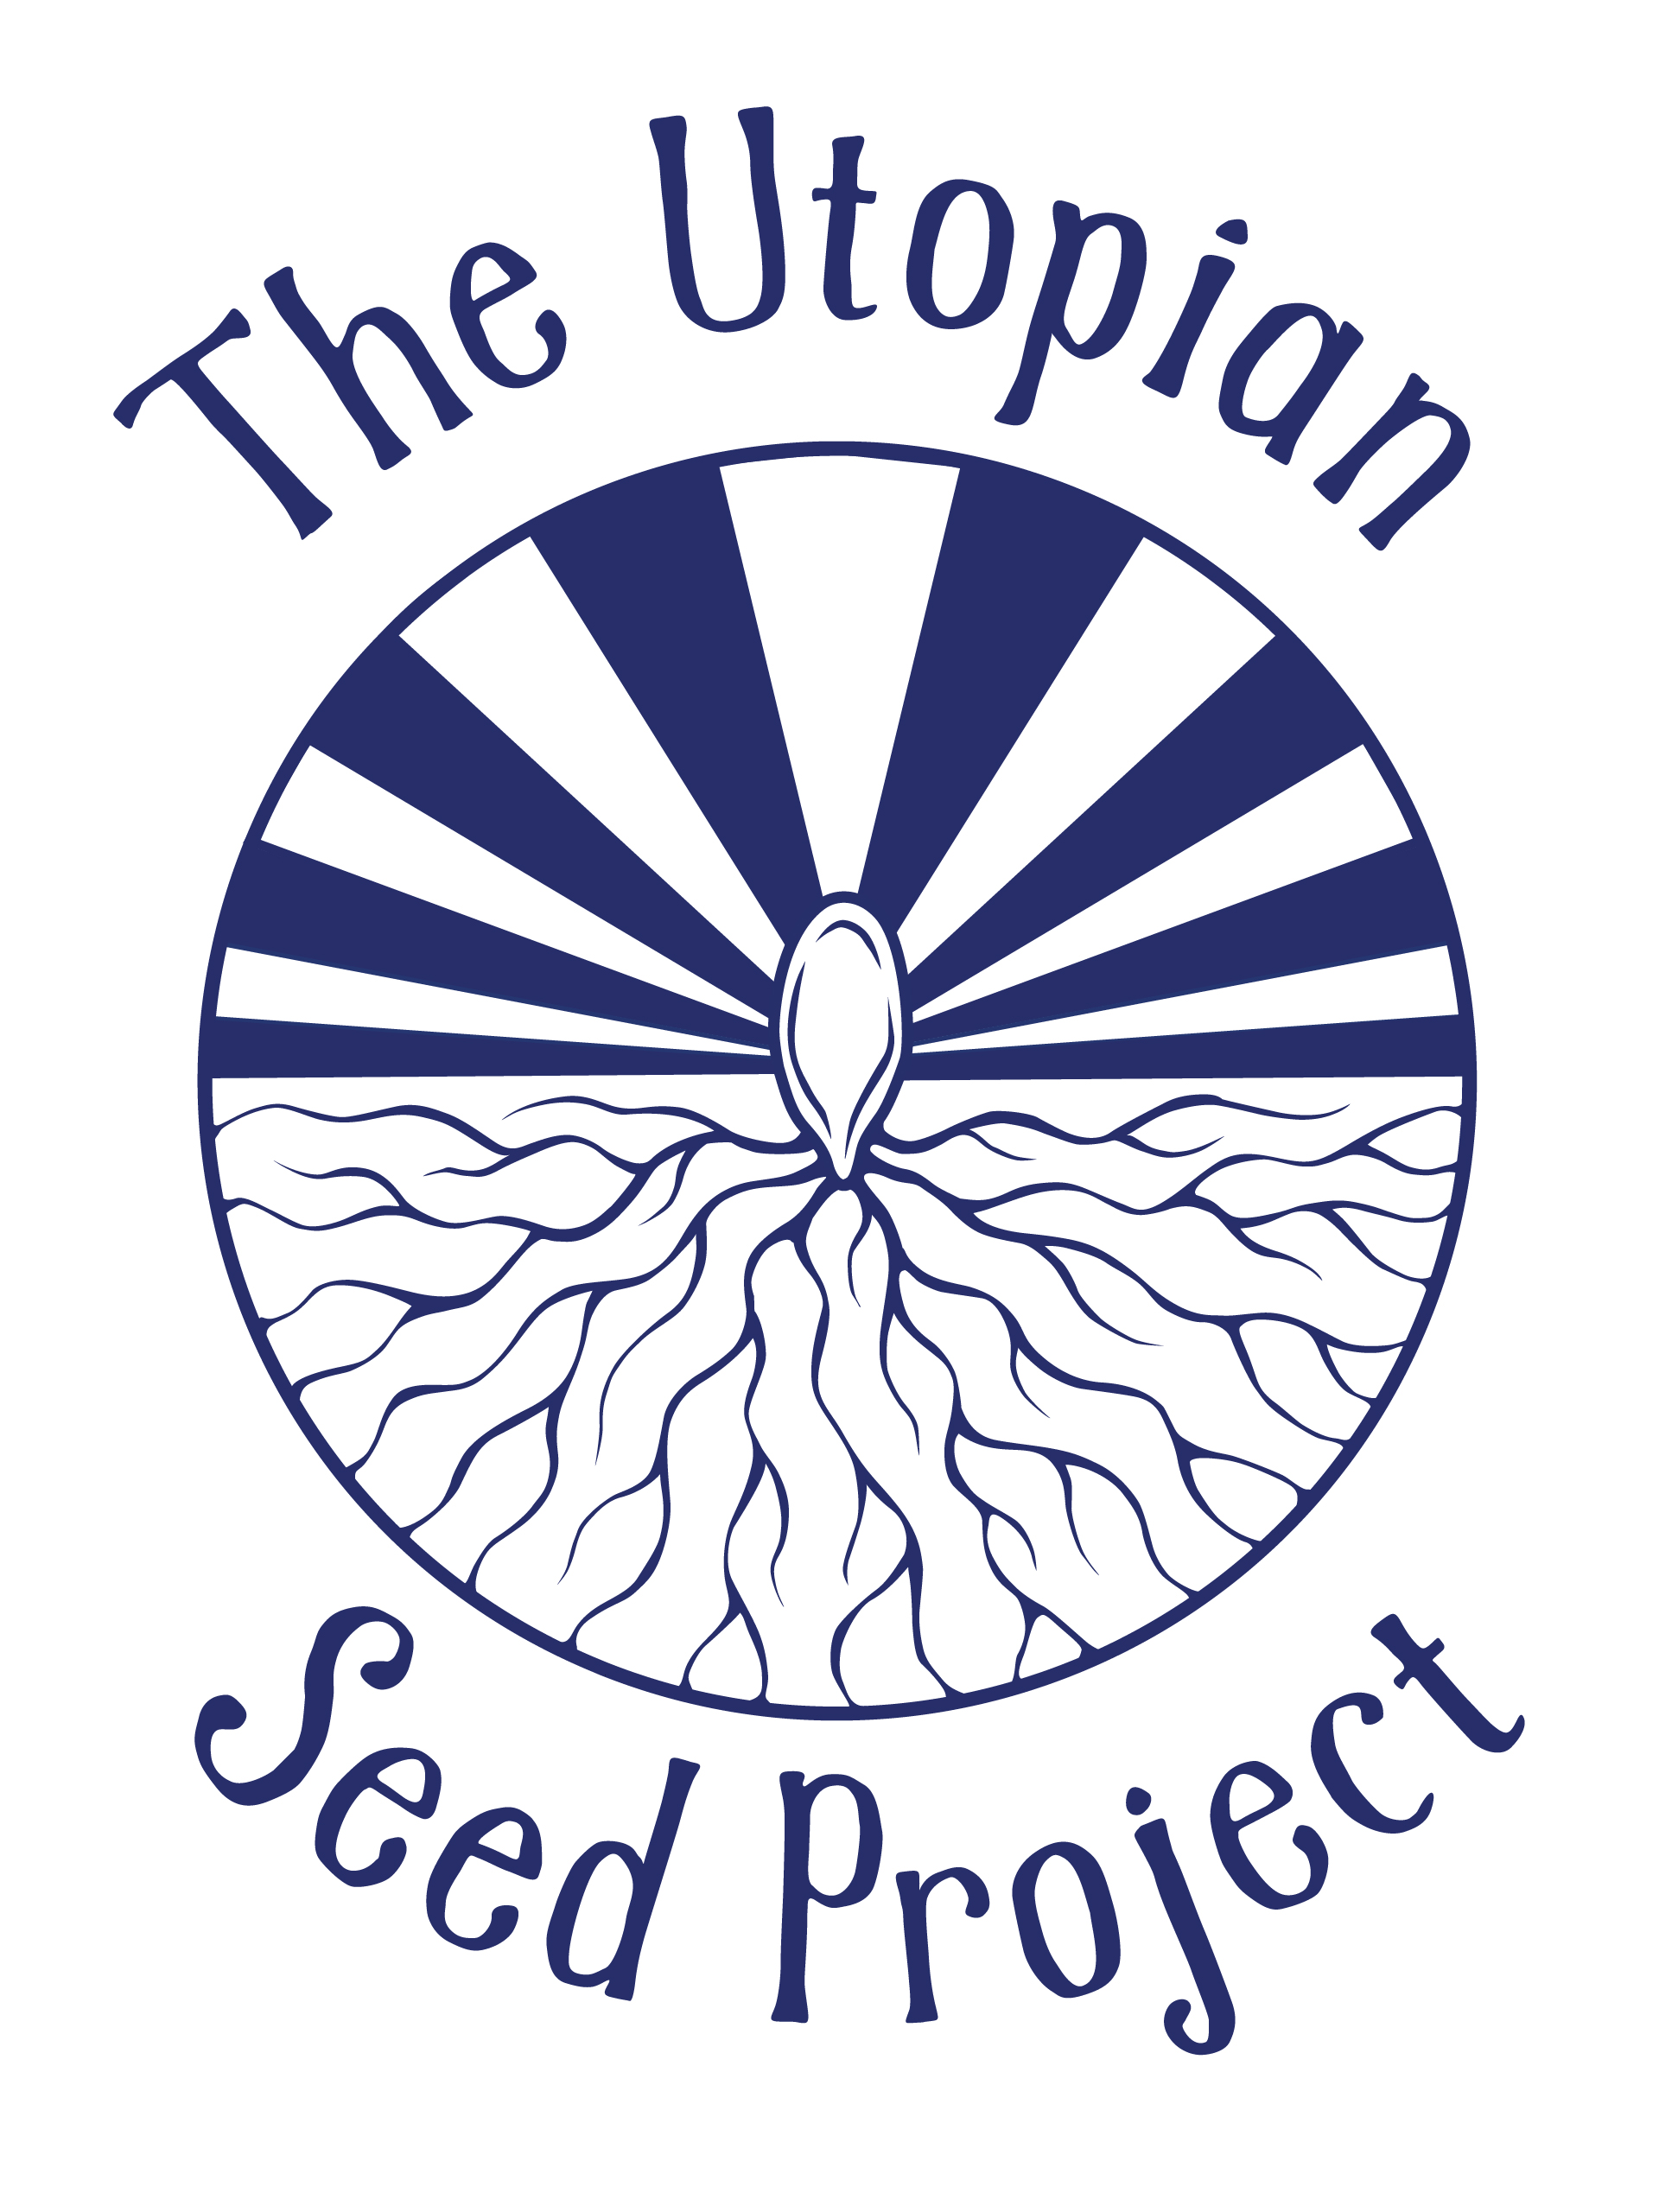 Utopian Seed Project Logo Monochrome